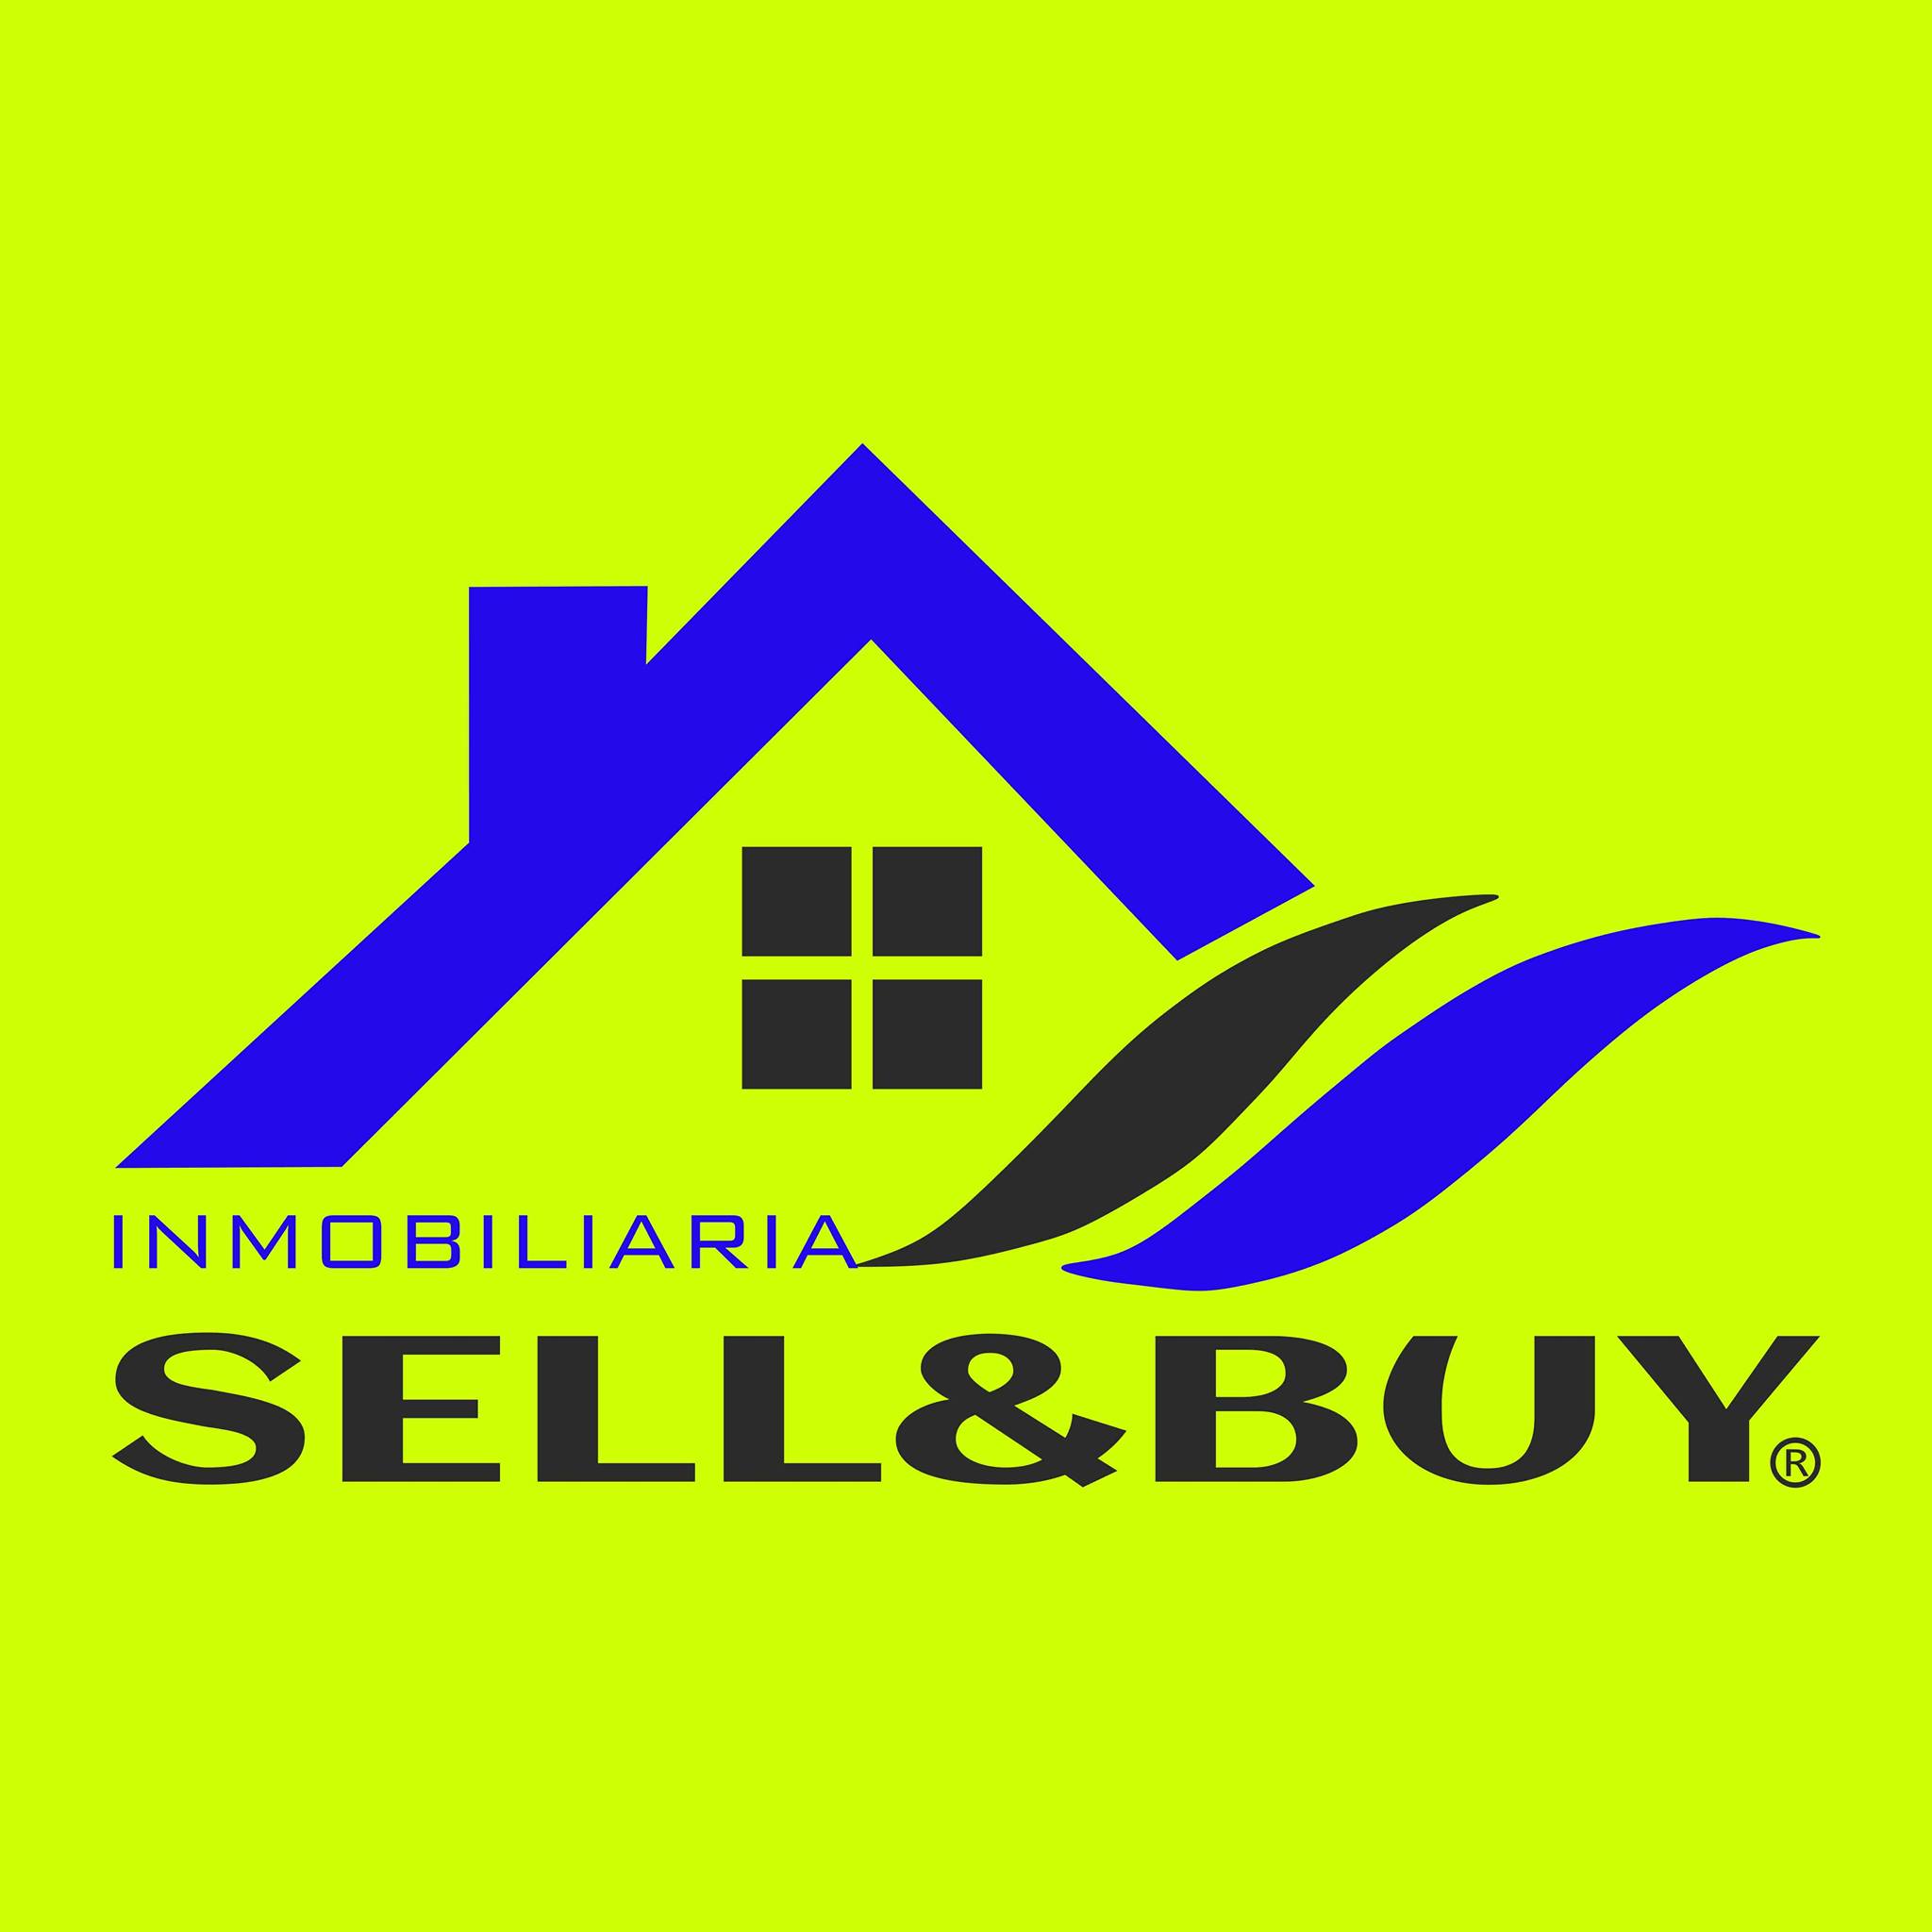 Vivienda en venta en Maliaño, Susana, gerente de Sell&Buy Inmobiliaria, nos habla sobre esta gran oportunidad